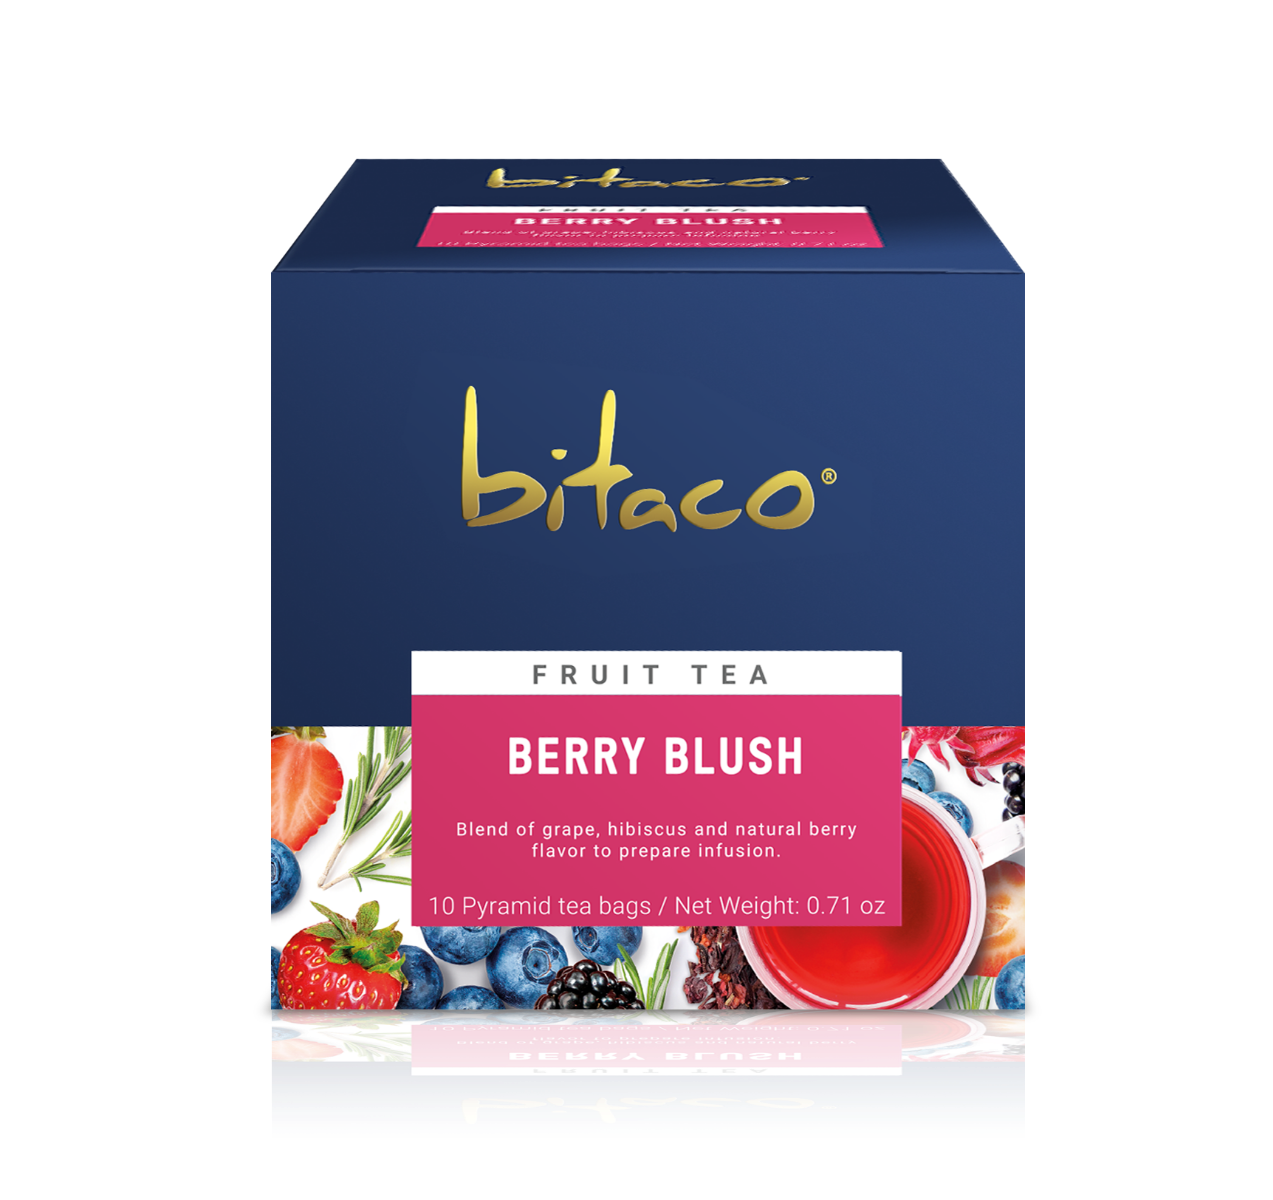 Ceai Berry Blush, 20g, Bitaco